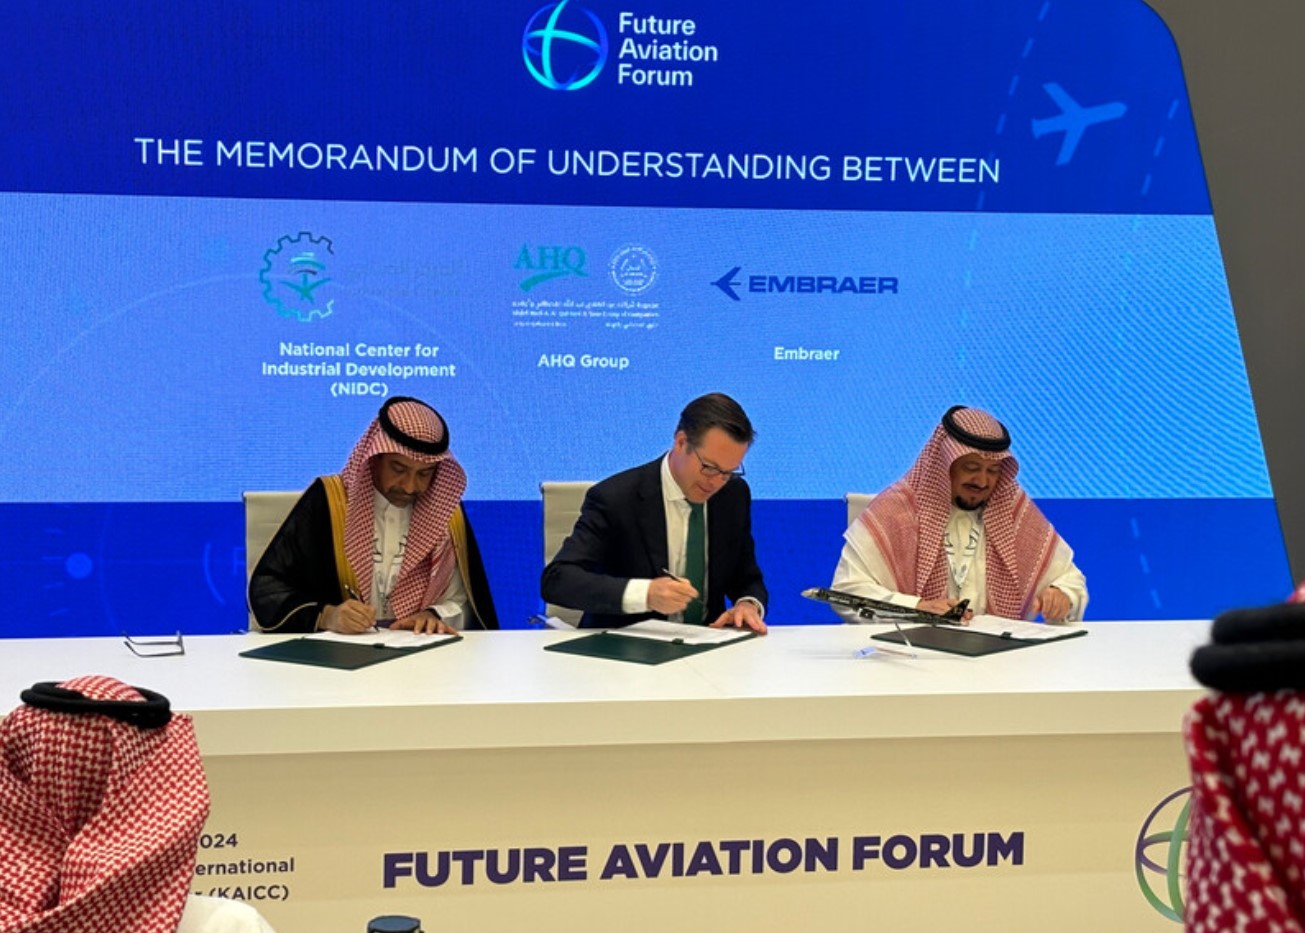 沙特国家工业发展中心、AHQ集团与巴航工业将在沙特阿拉伯合作建设航空航天生态系统